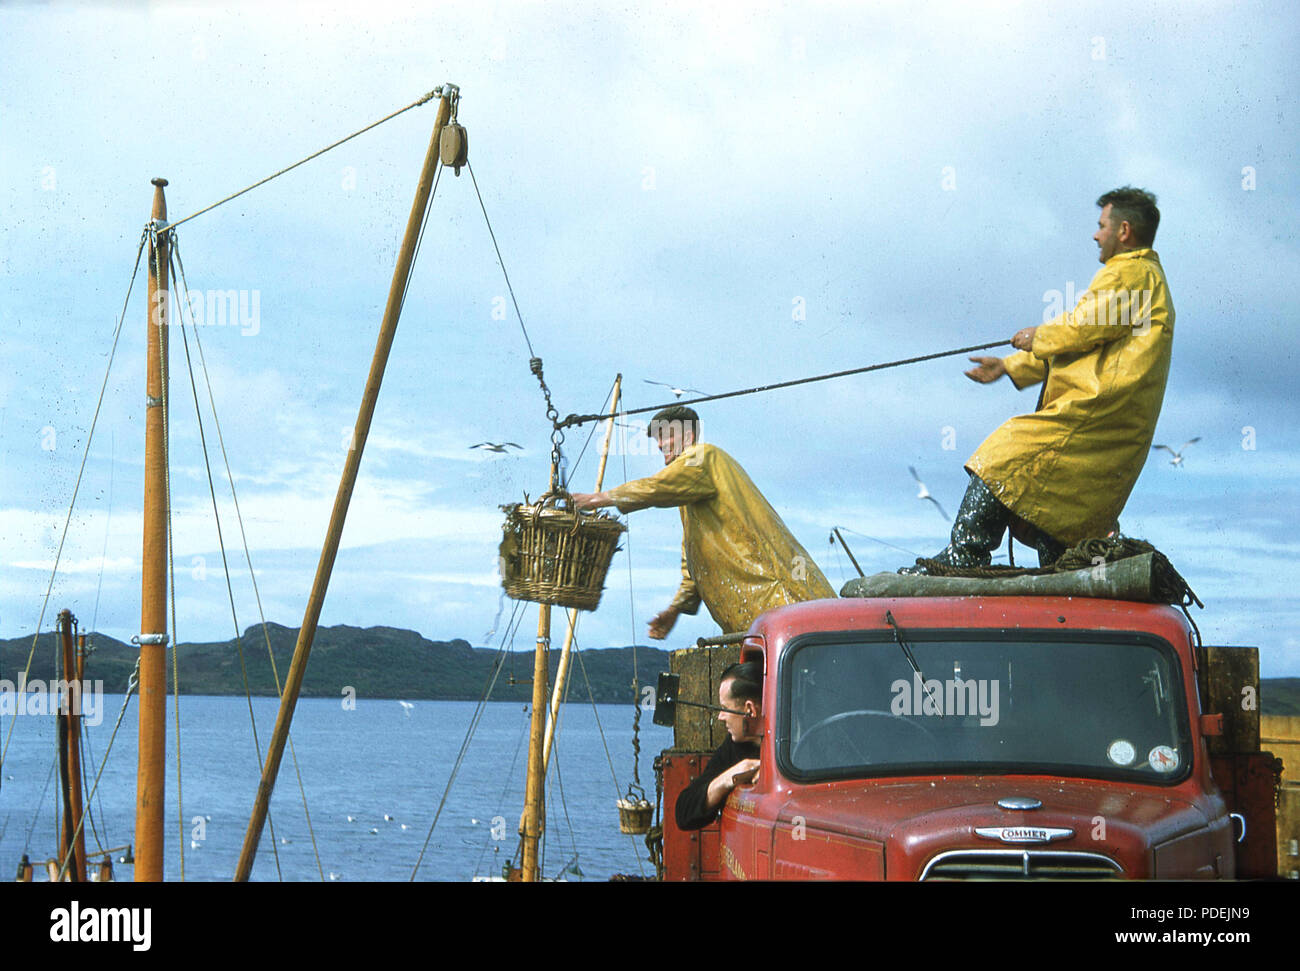 1960s, two fishermen wearing yellow waterproof rain jackets on top